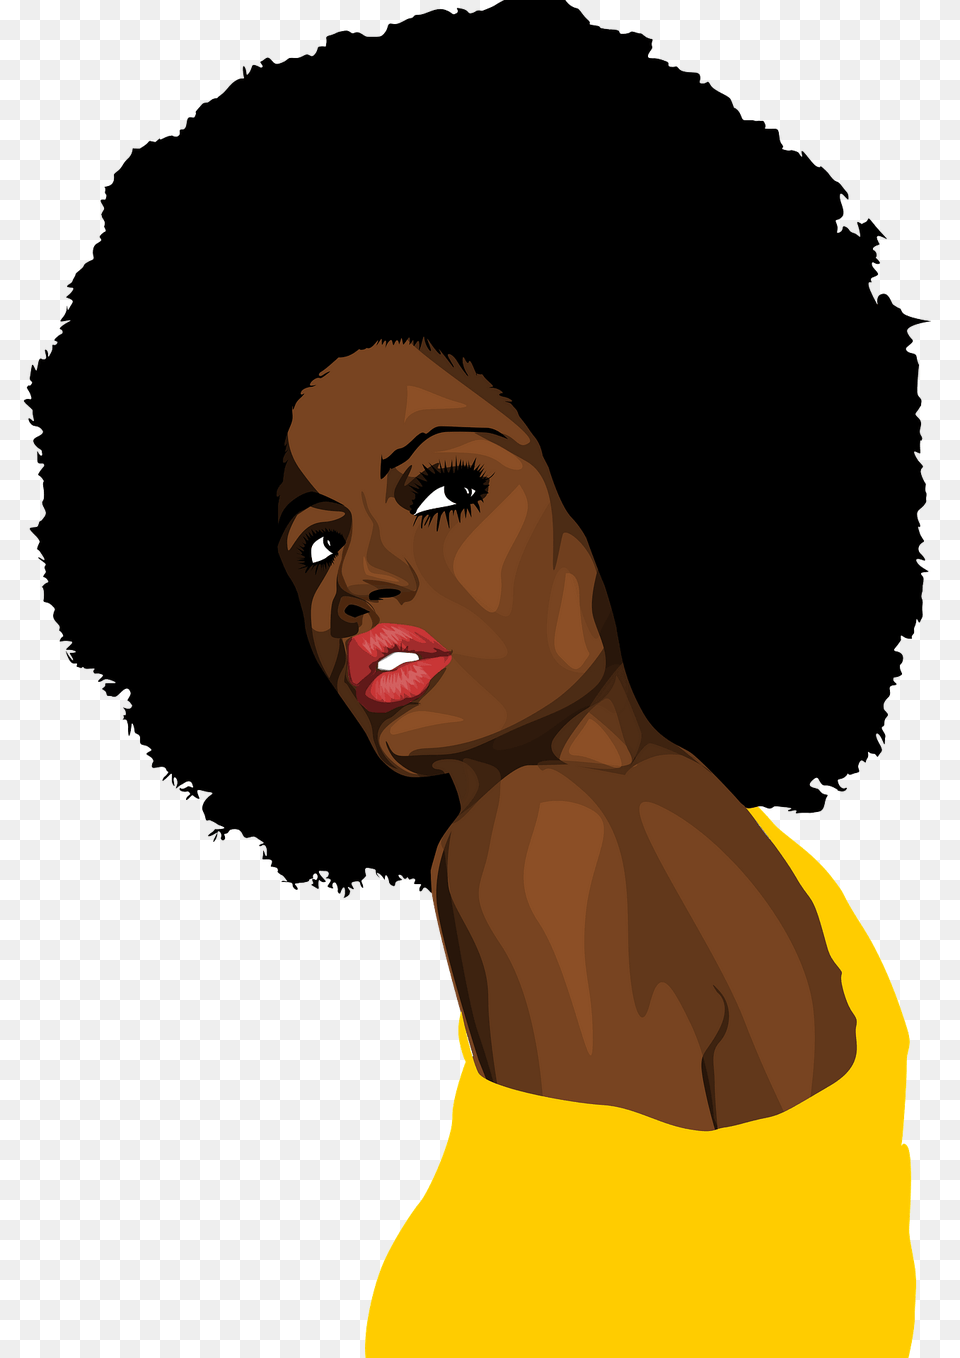 Pin Up Black Woman Clipart, Neck, Body Part, Face, Portrait Png Image